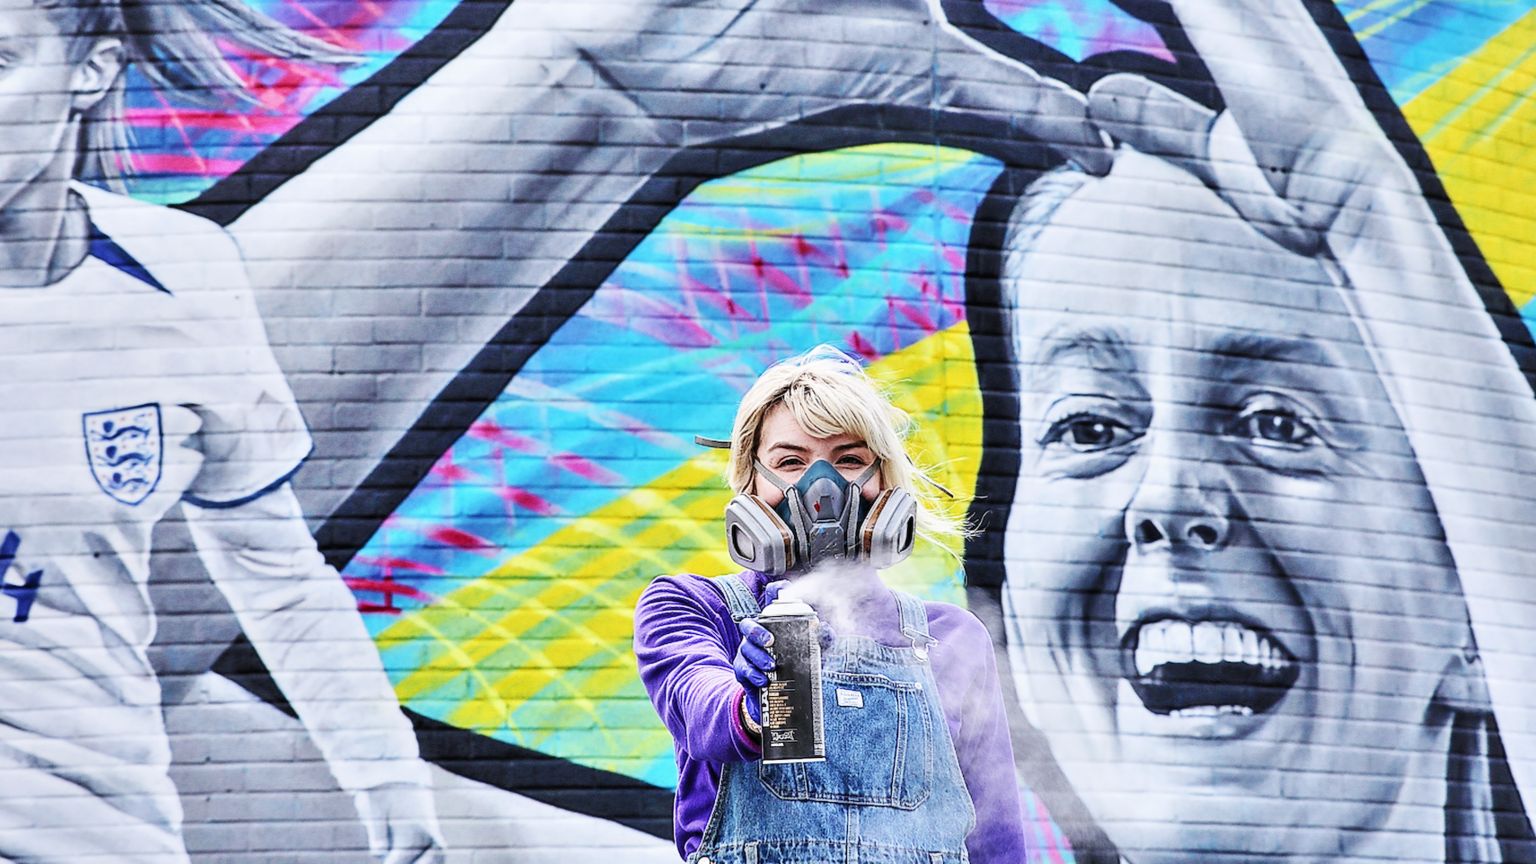 Manchester based street artist Katie Scott 